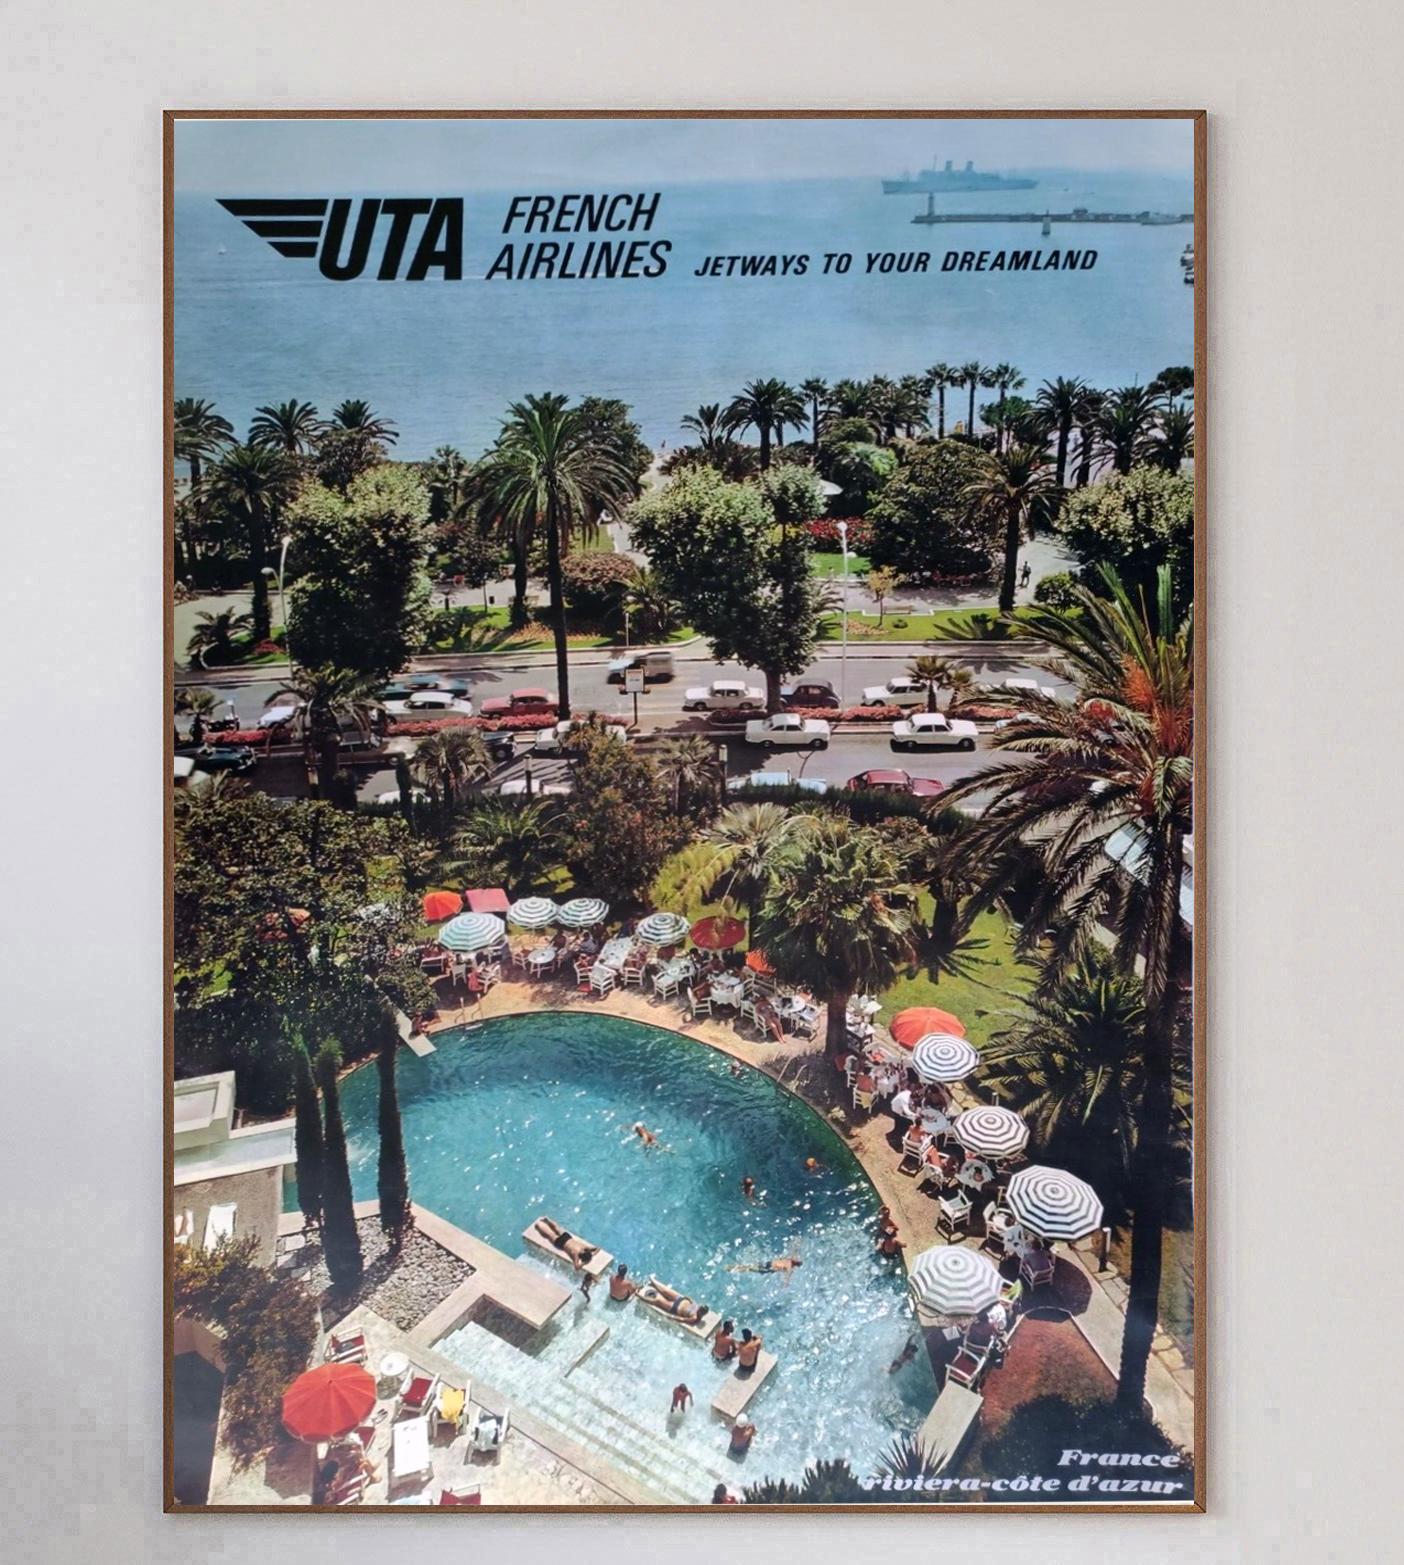 Magnifique affiche promouvant les lignes d'UTA French Airlines vers la Côte d'Azur. Créée en 1967, cette œuvre représente une belle journée d'été dans le sud de la France, avec une piscine bordée de chaises longues au bord de la côte, et porte